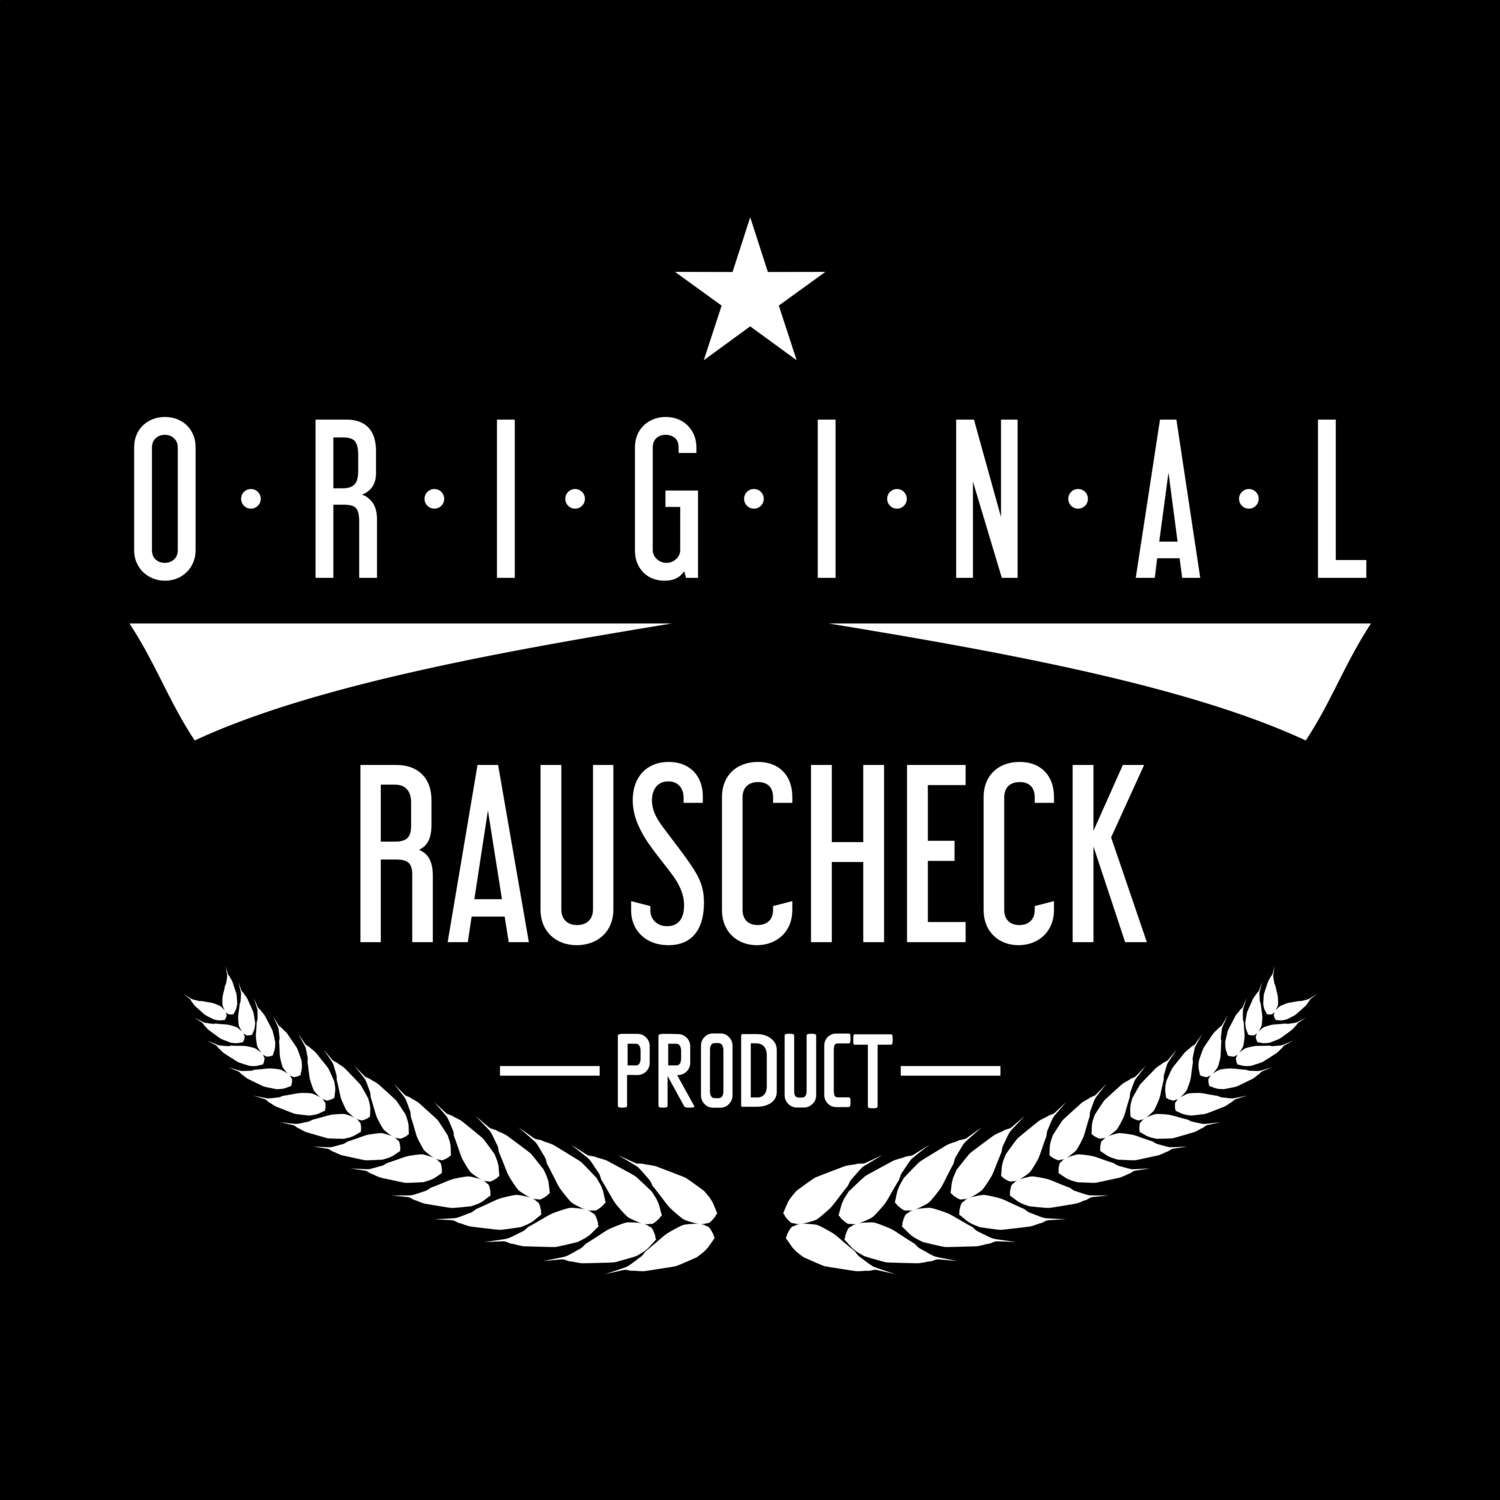 Rauscheck T-Shirt »Original Product«